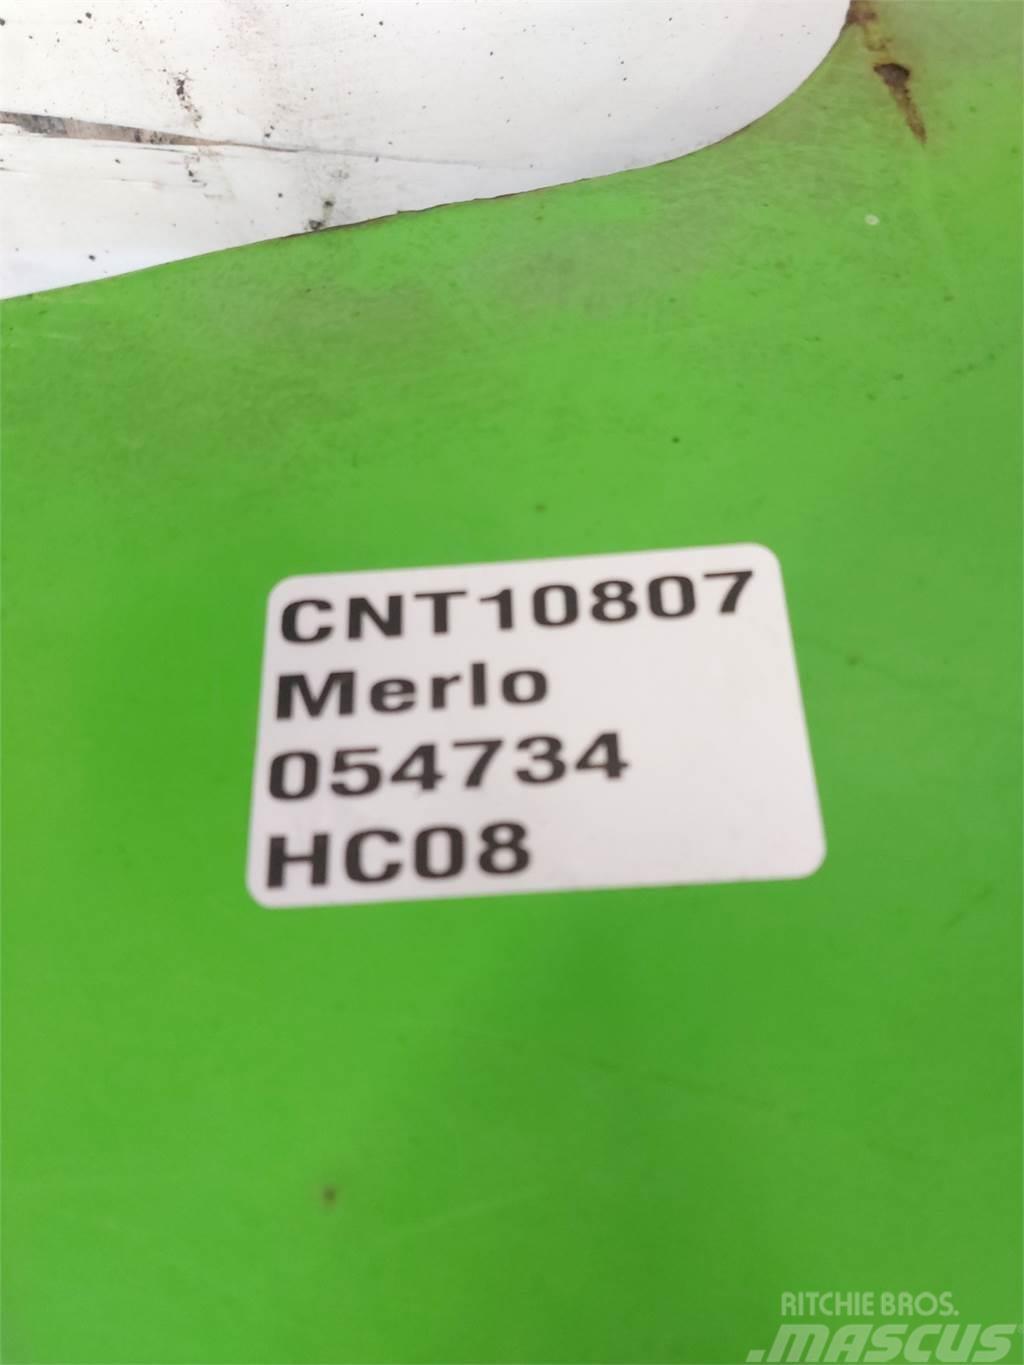 Merlo P40.7 Siebschaufeln